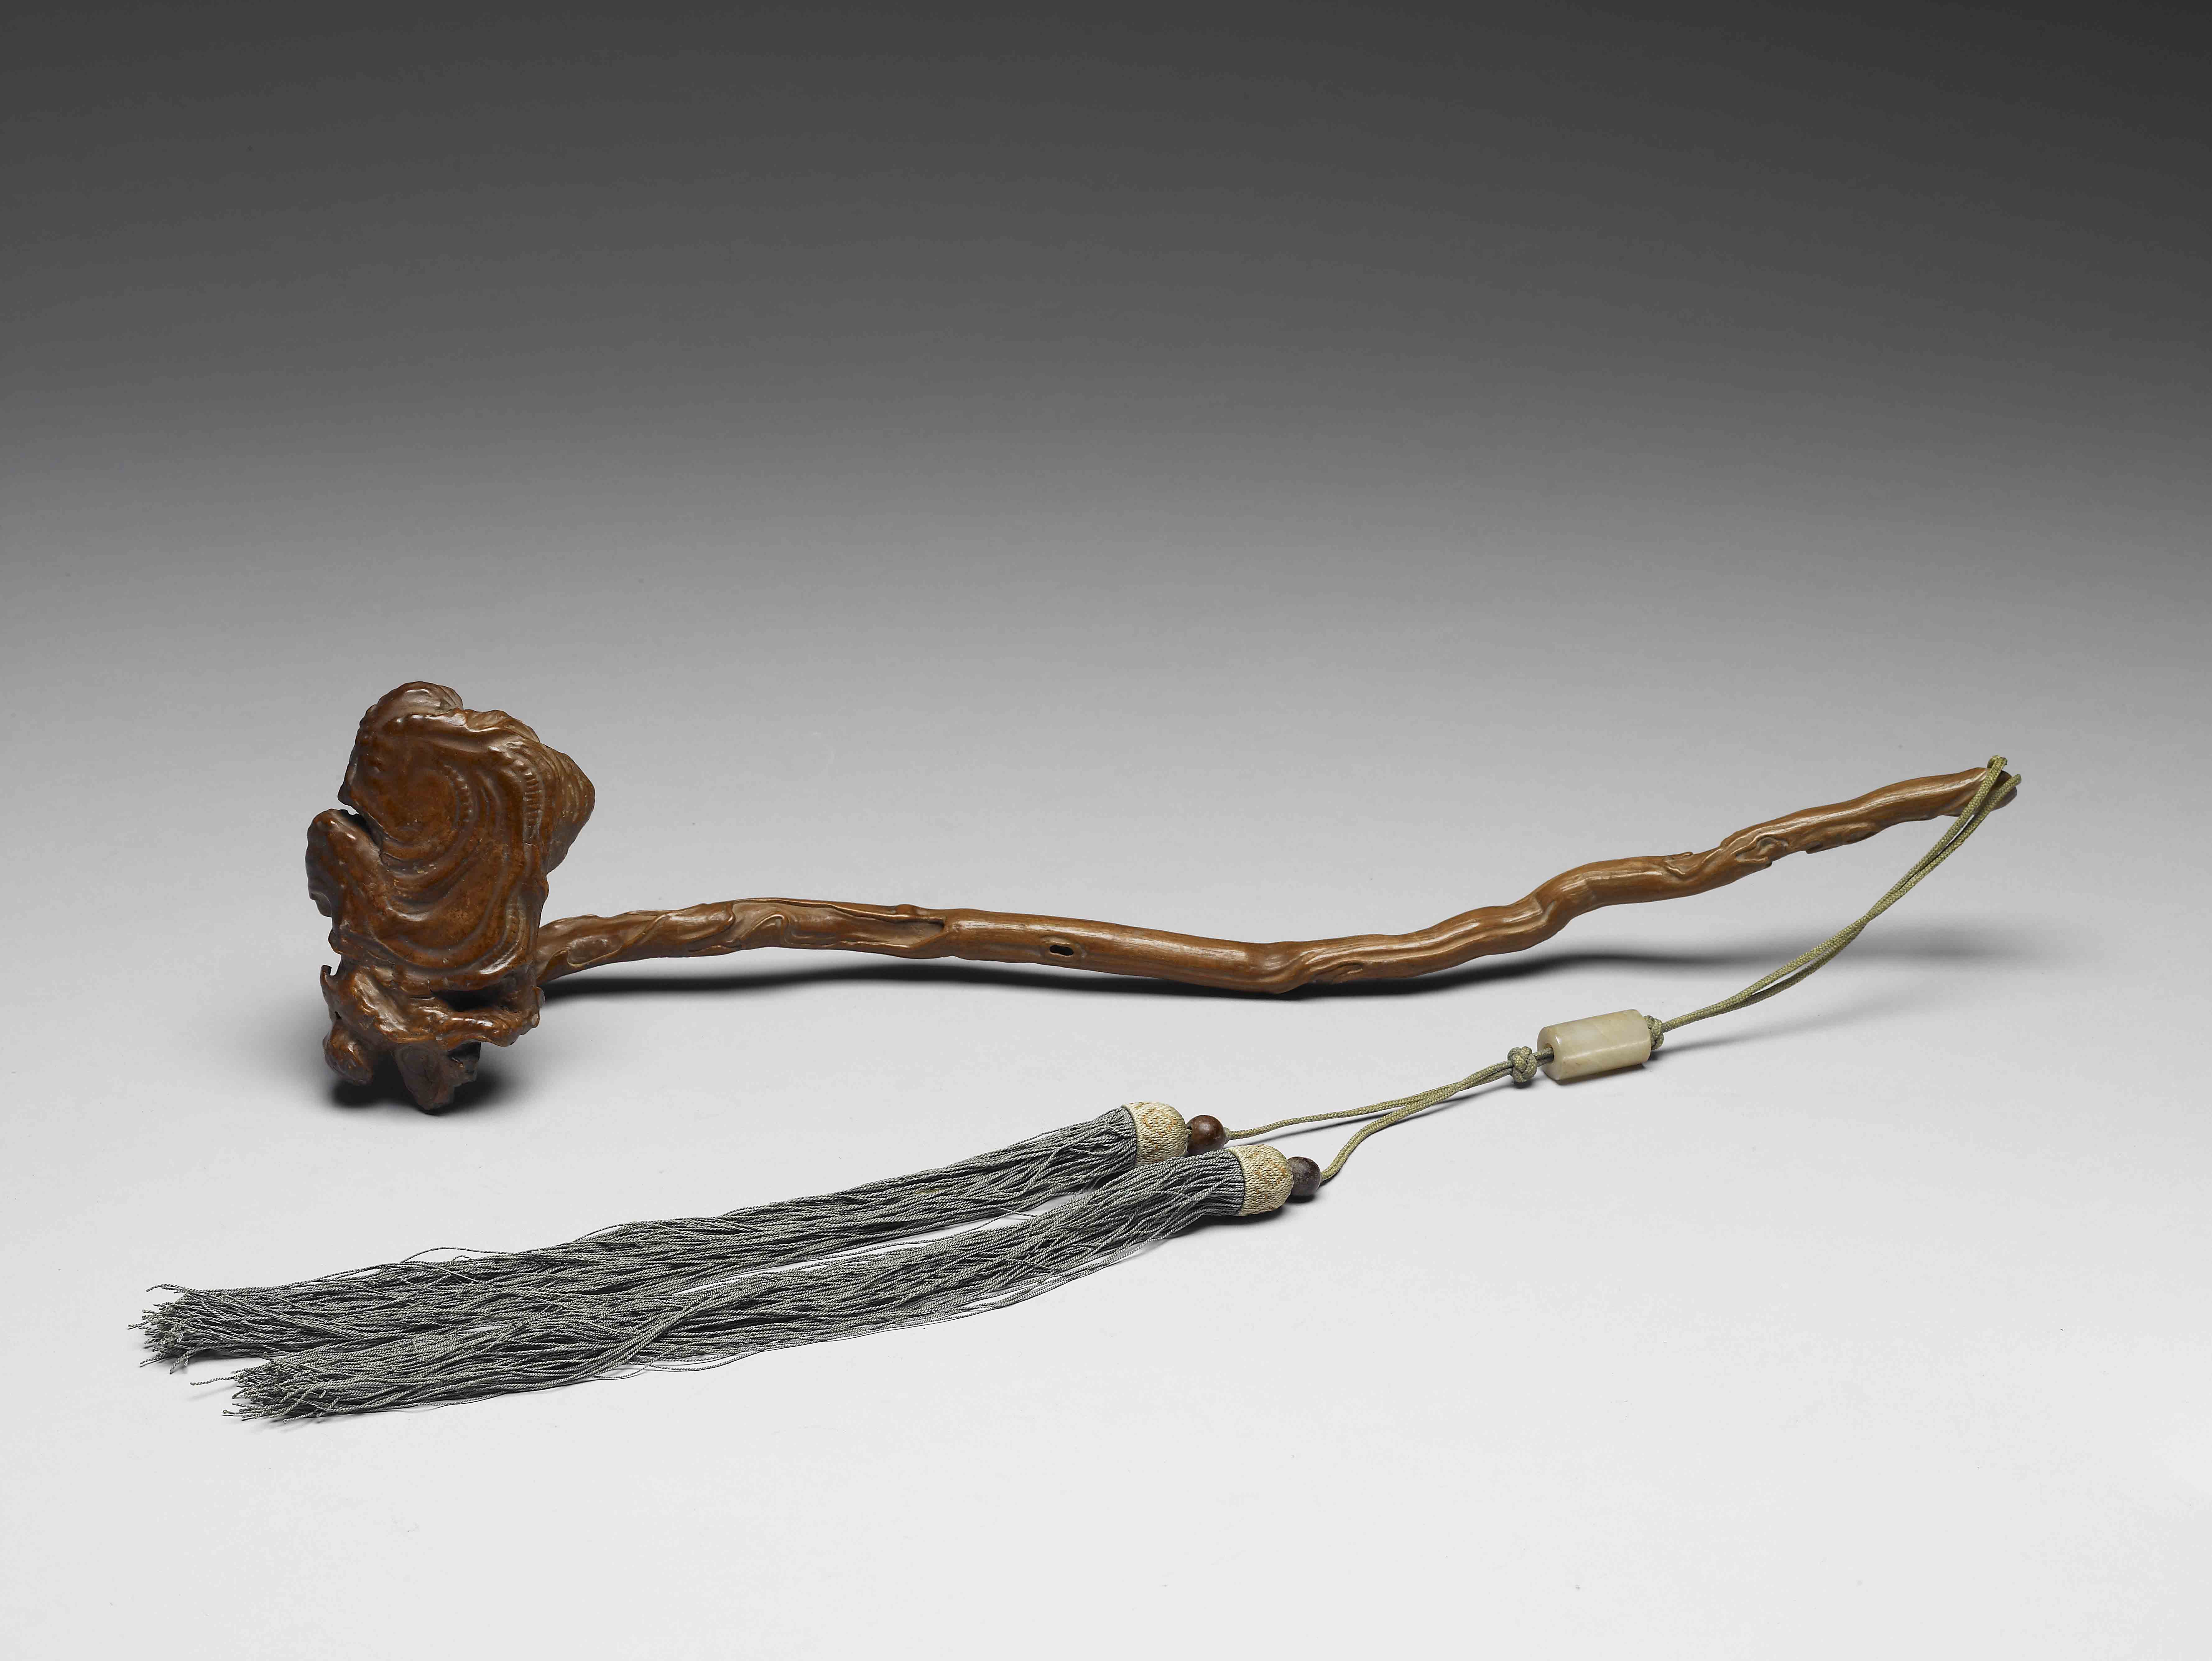 Tree-root Ruyi scepter